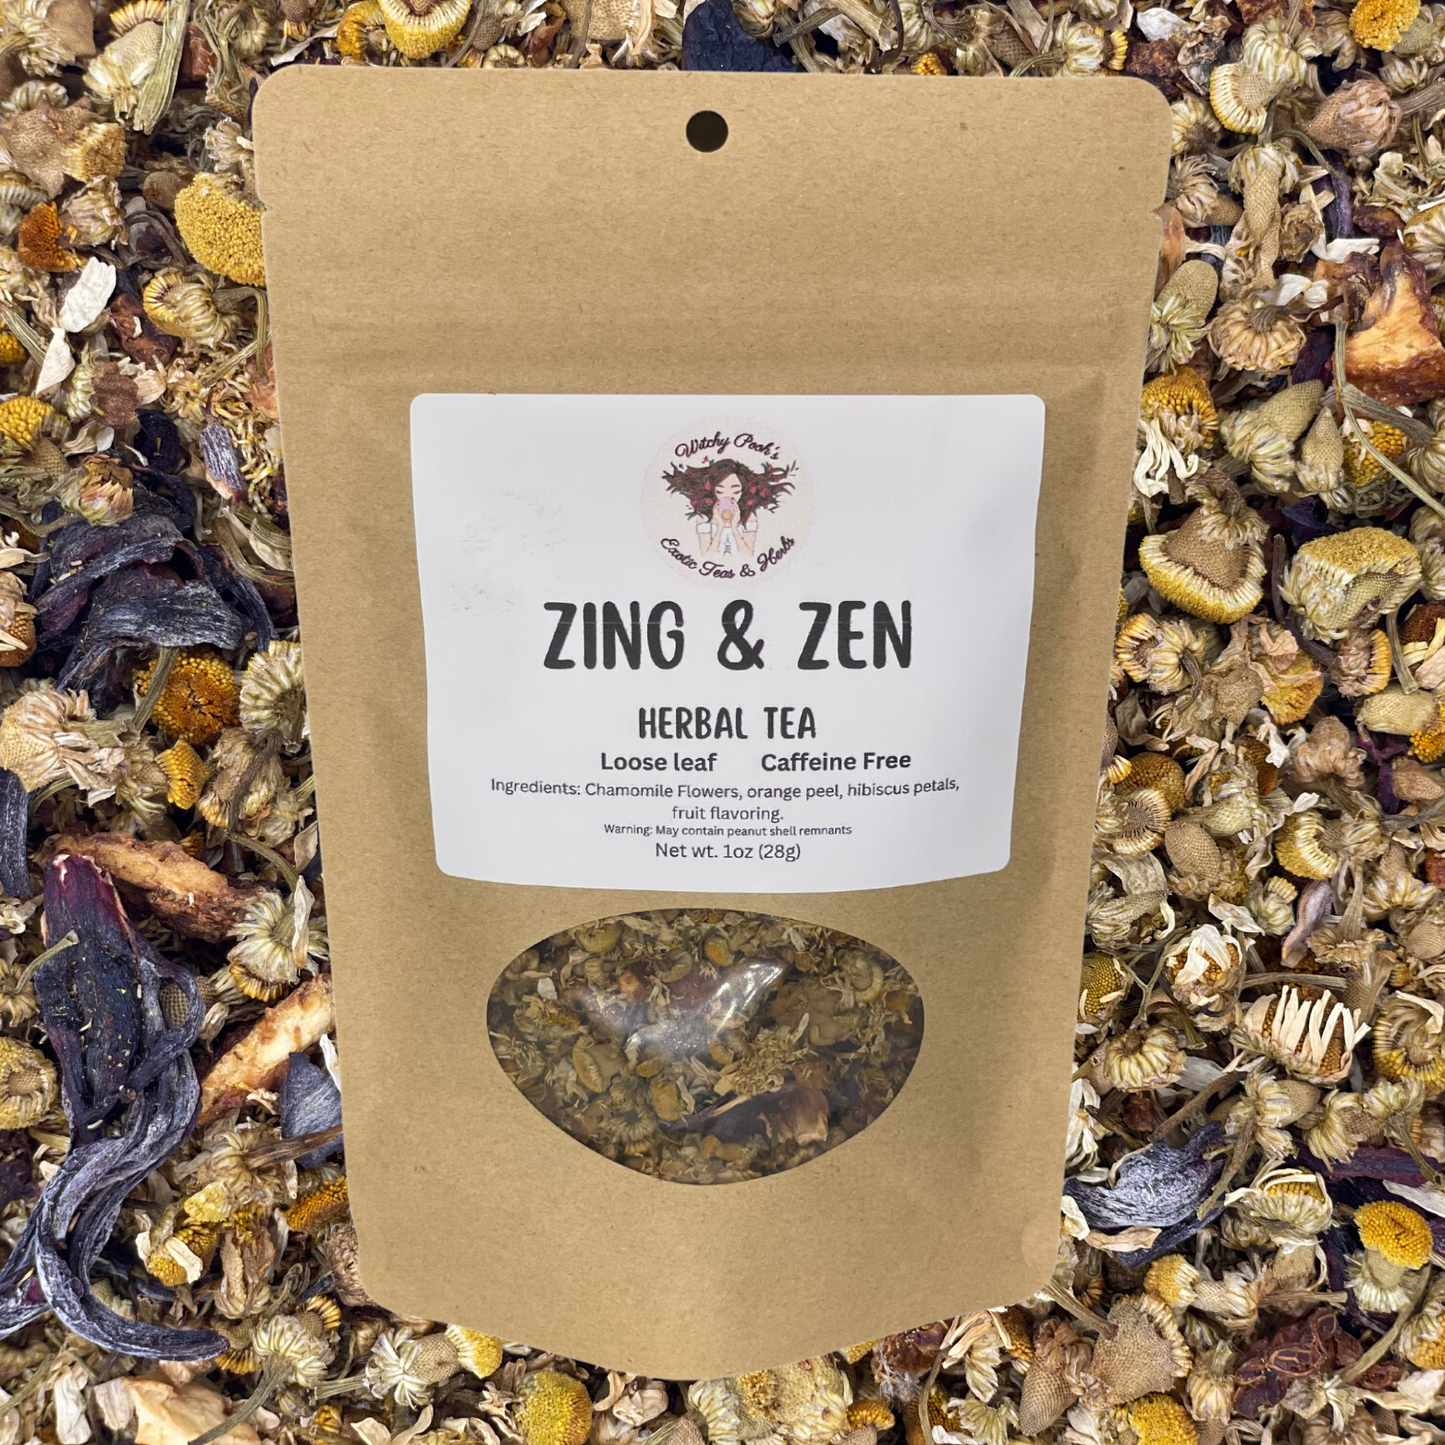 Zing & Zen Tea, Herbal Tea, Loose Leaf Tea, Caffeine Free Tea, Flavored Tea, Chamomile Tea